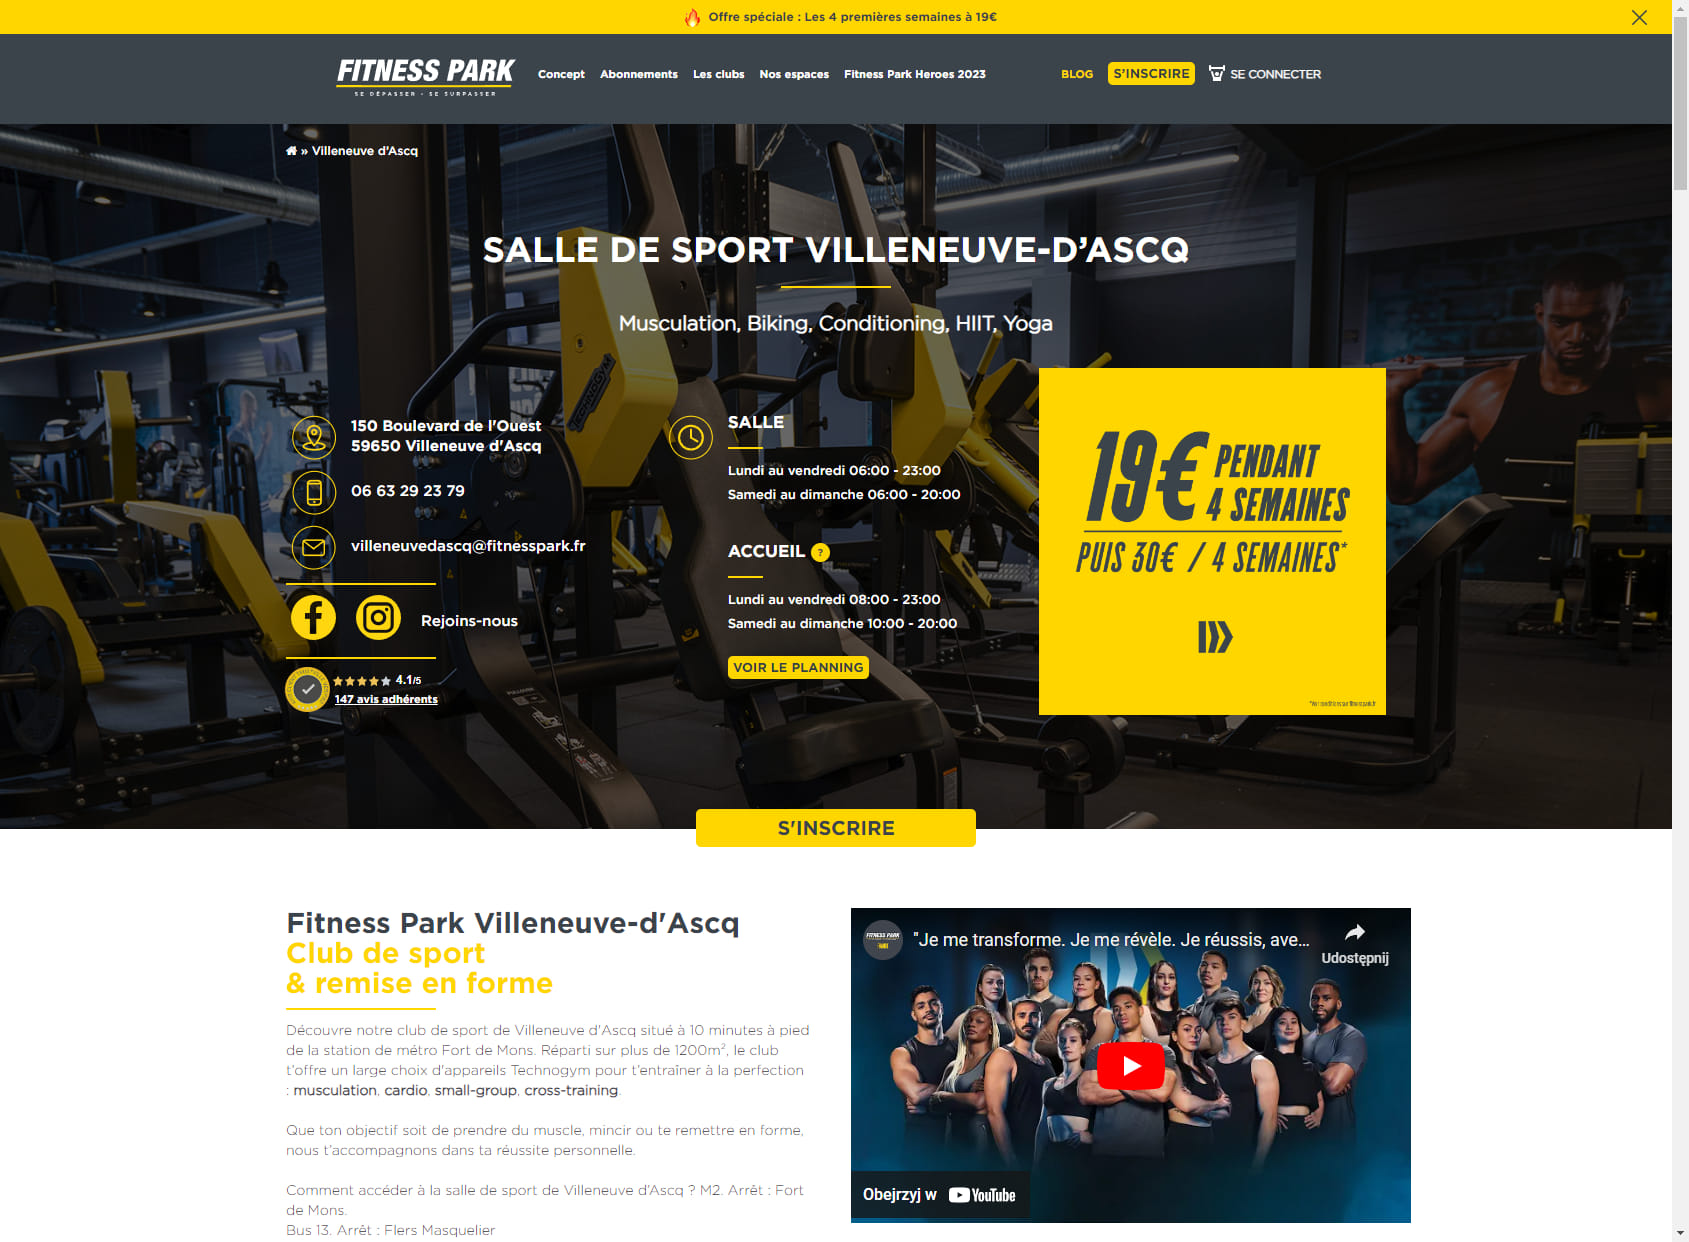 Salle de sport Villeneuve-d'Ascq - Fitness Park